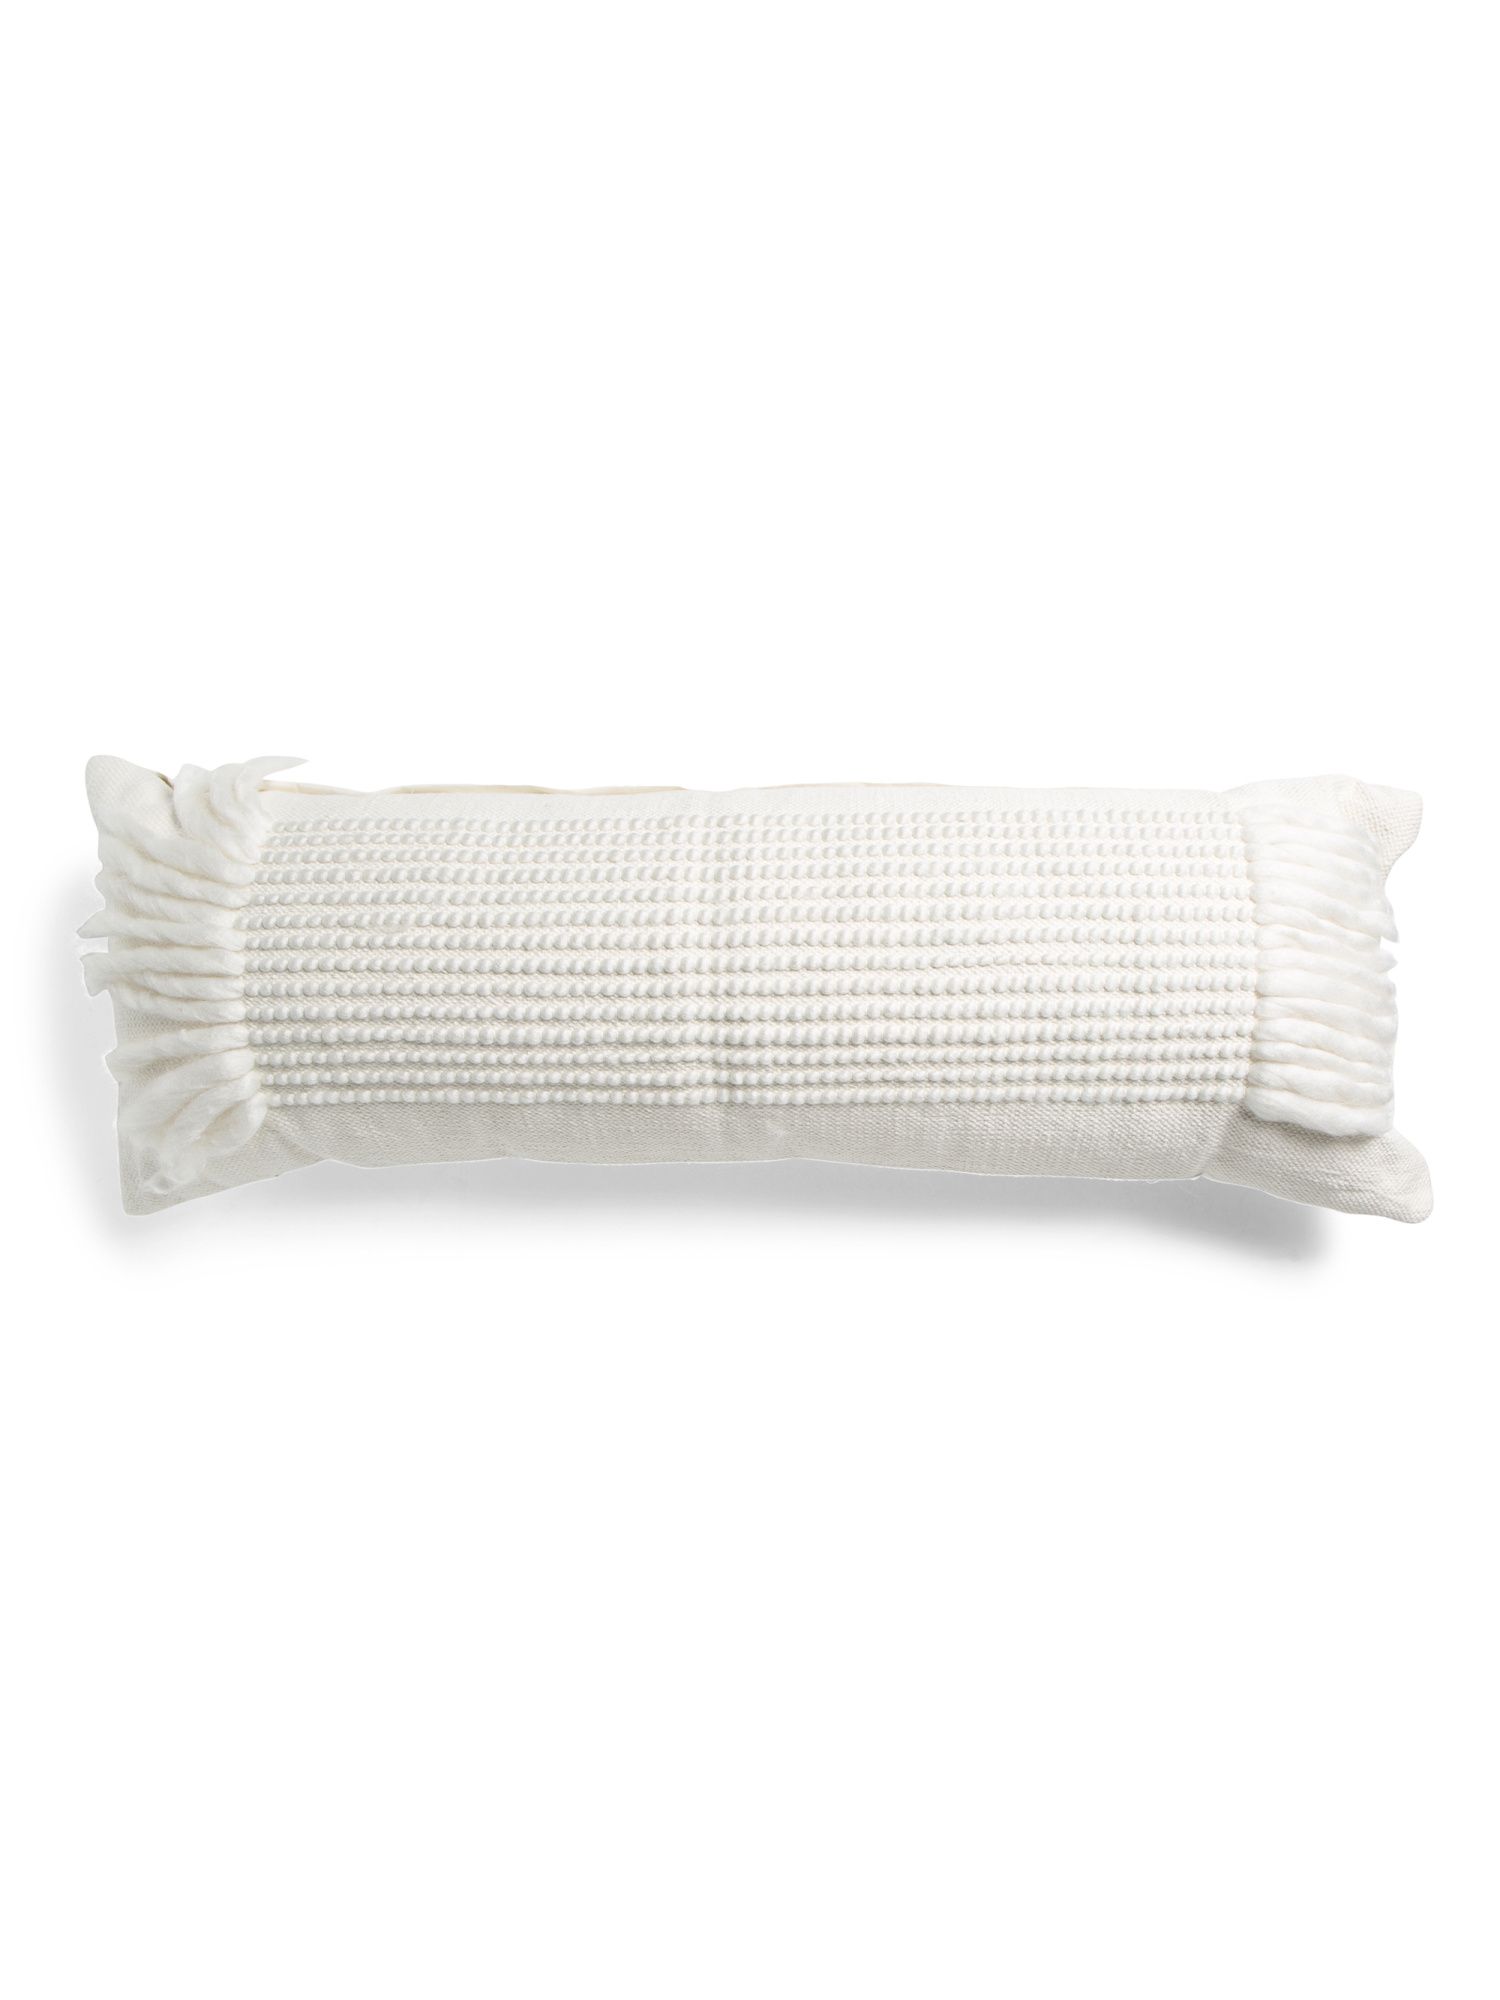 14x38 Lulu Textured Oversized Pillow | TJ Maxx